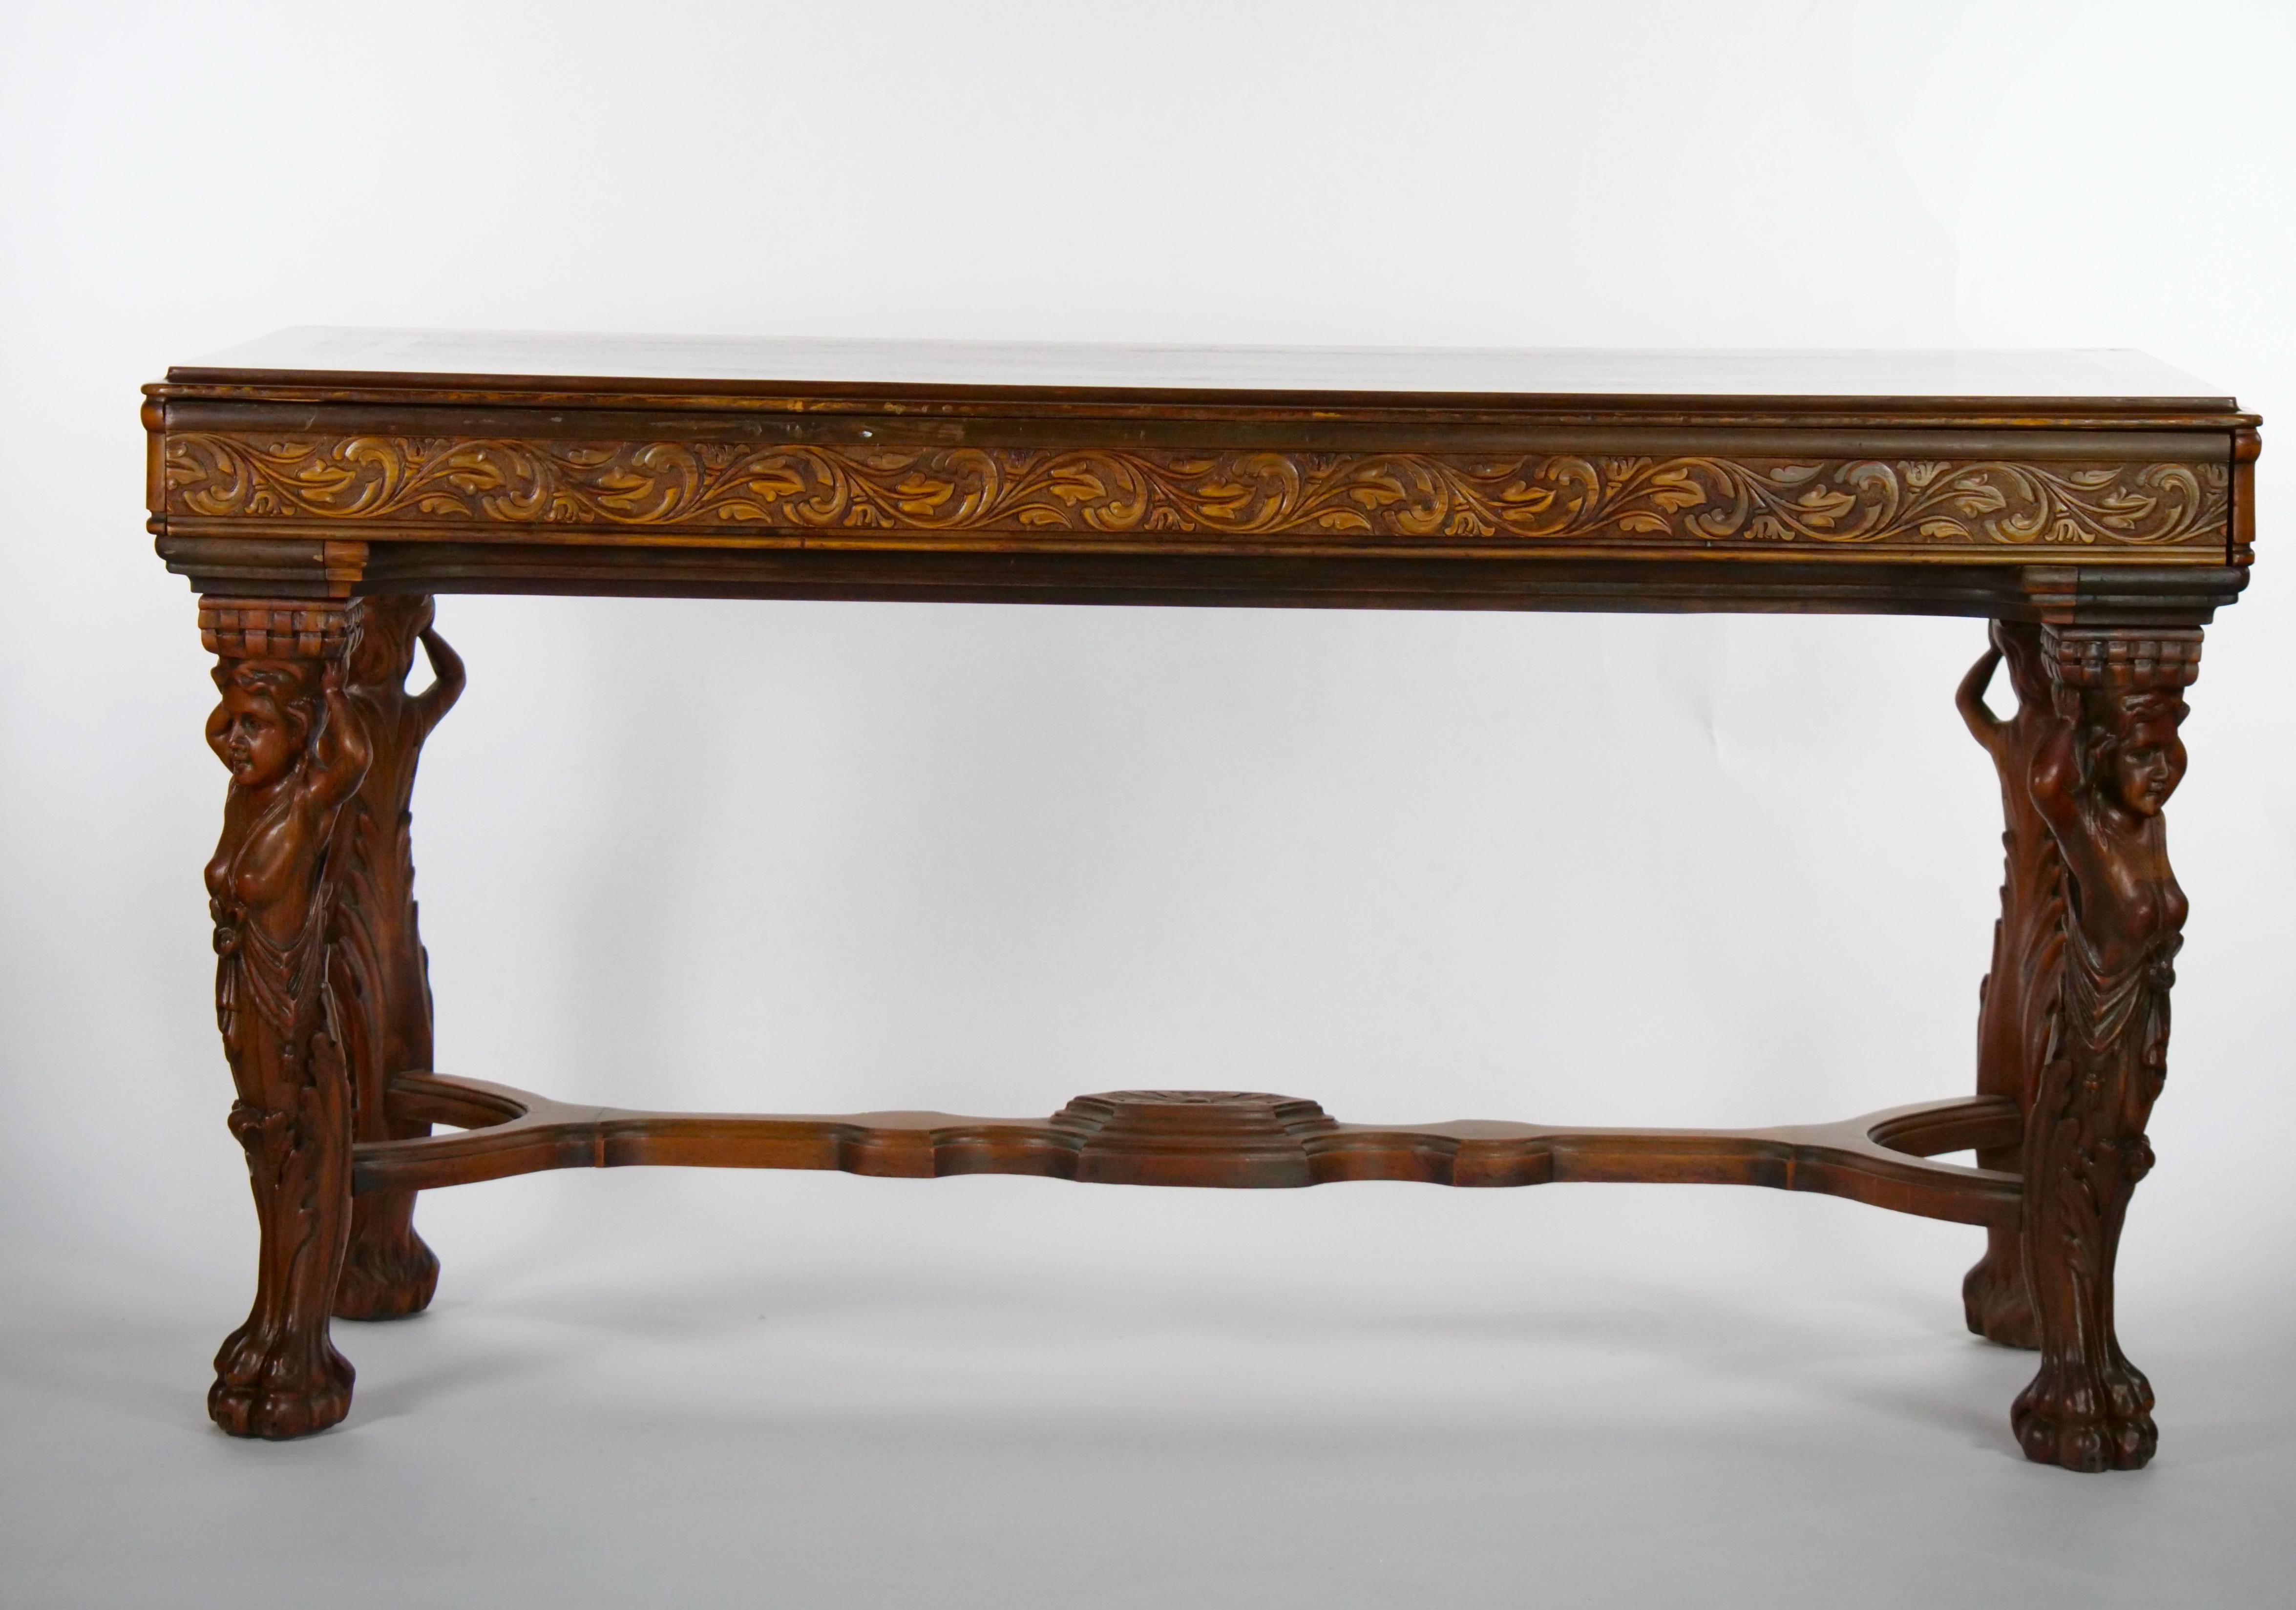 Schöne Handwerkskunst Mahagoni  Chippendale-Stil 19. Jahrhundert Hand geschnitzt Nussbaum Intarsien oben Konsole / Mitte Tisch.  Der Tisch verfügt über stark handgeschnitzte Cabriole Figur Holing Beine Design mit Tatze Füße. Es ist einfach exquisit